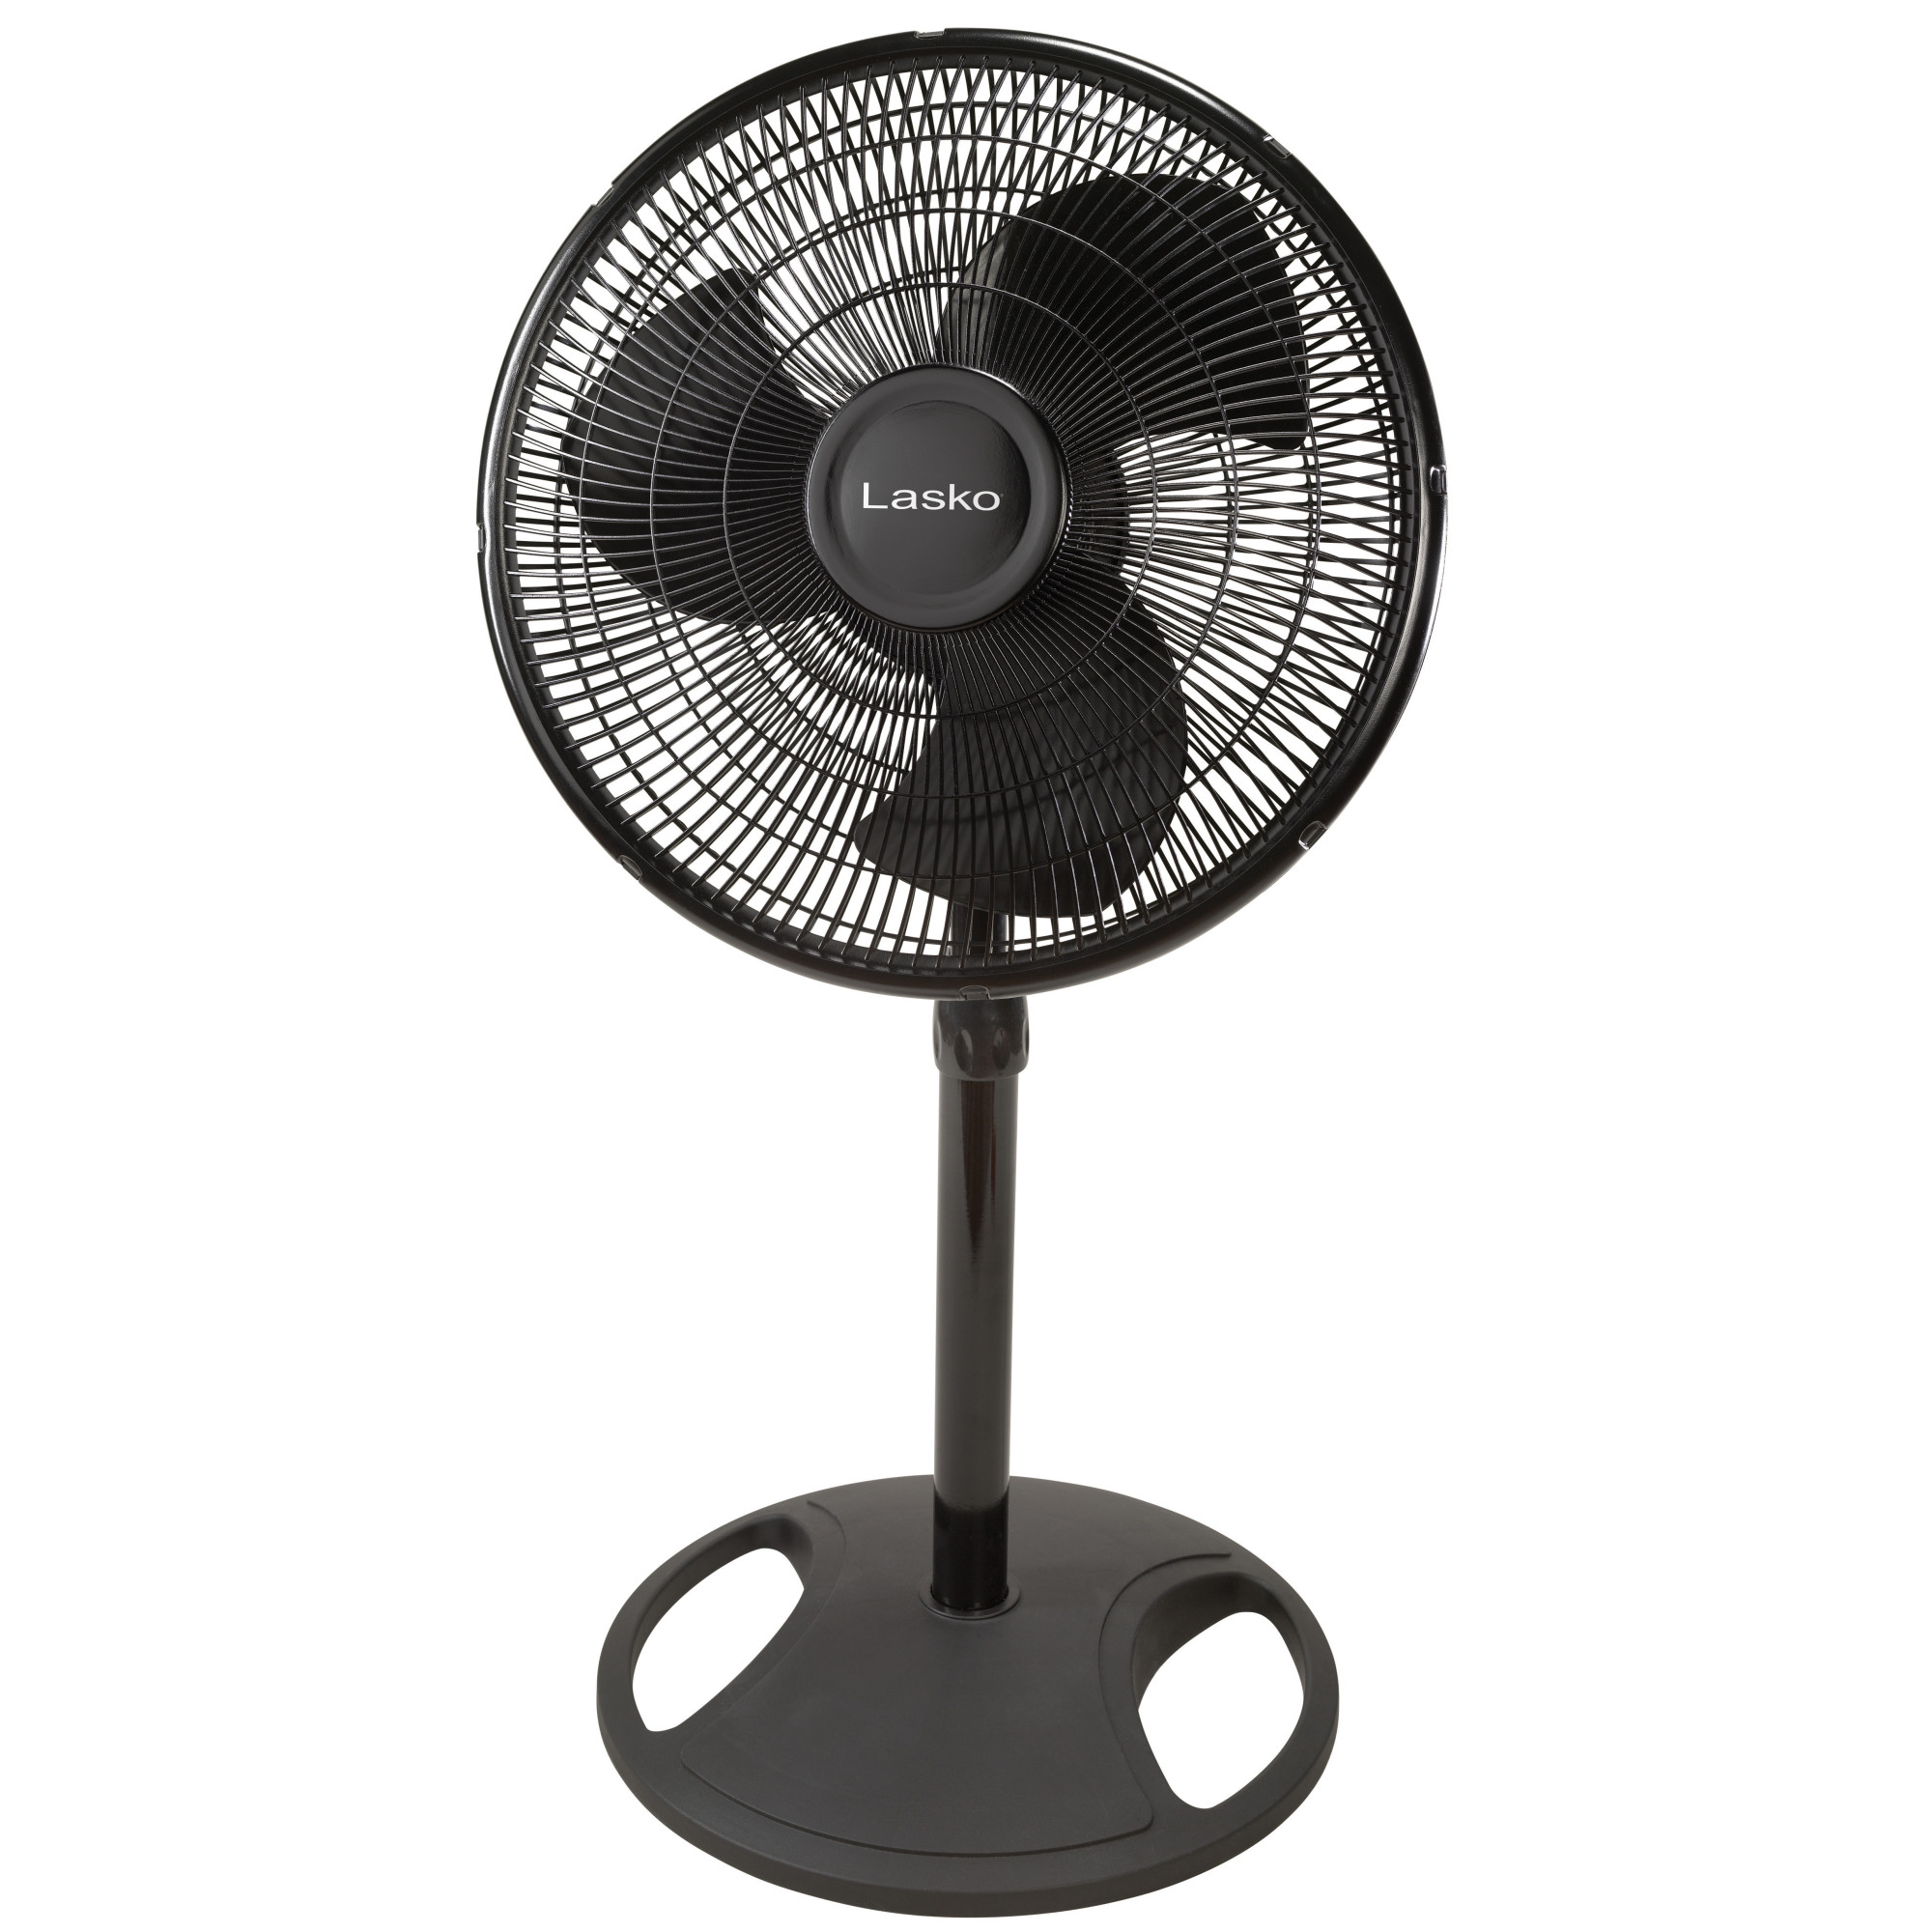 Lasko 16" Oscillating Adjustable Pedestal Fan with 3-Speeds, 47" H, Black, S16500, New - image 11 of 12